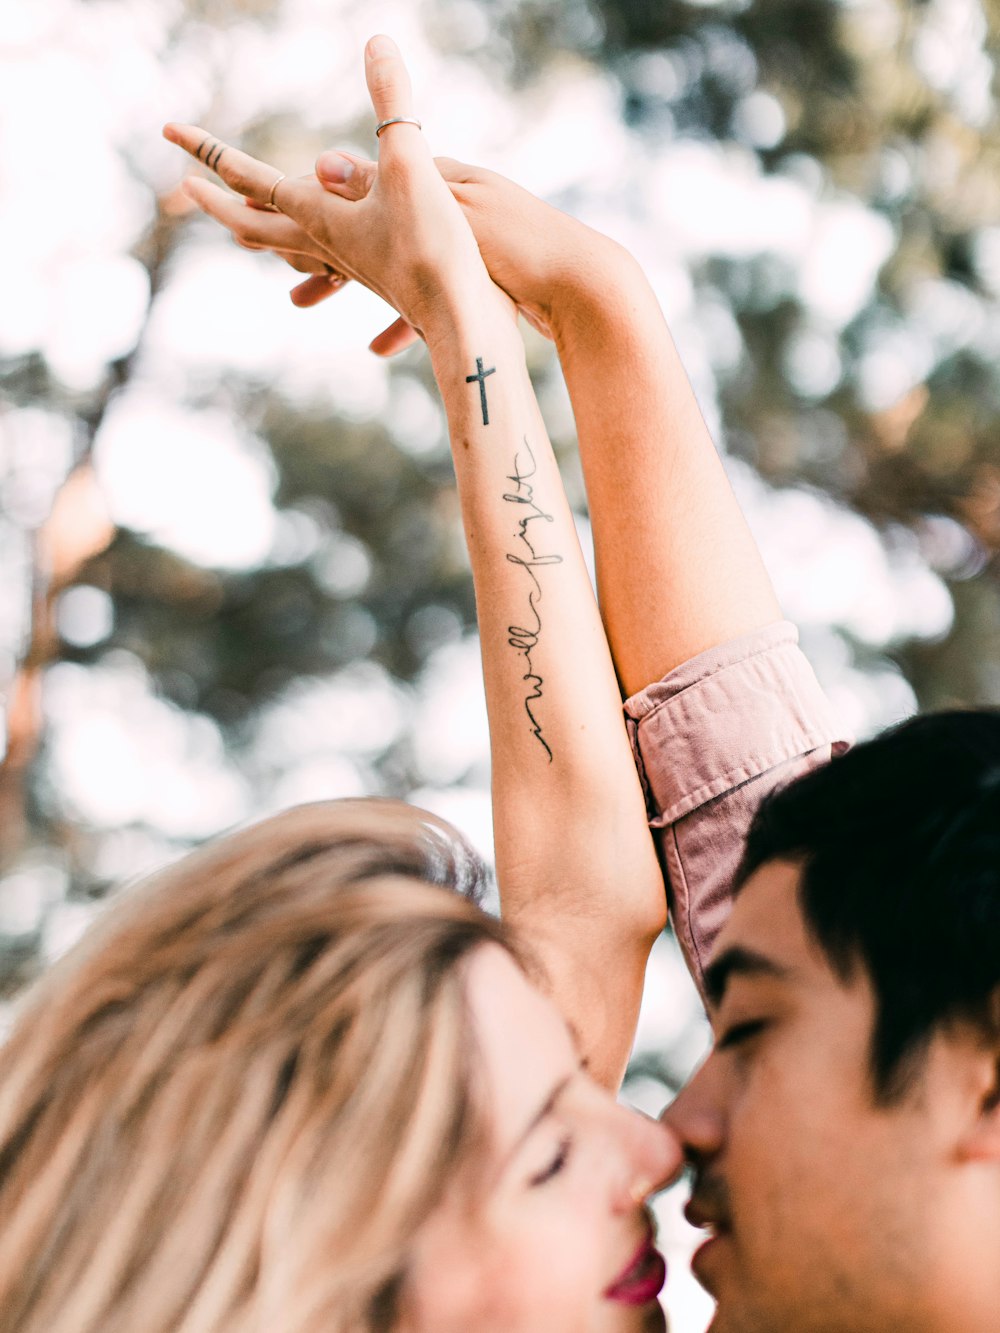 mulher na camisa preta com tatuagem em seu braço esquerdo